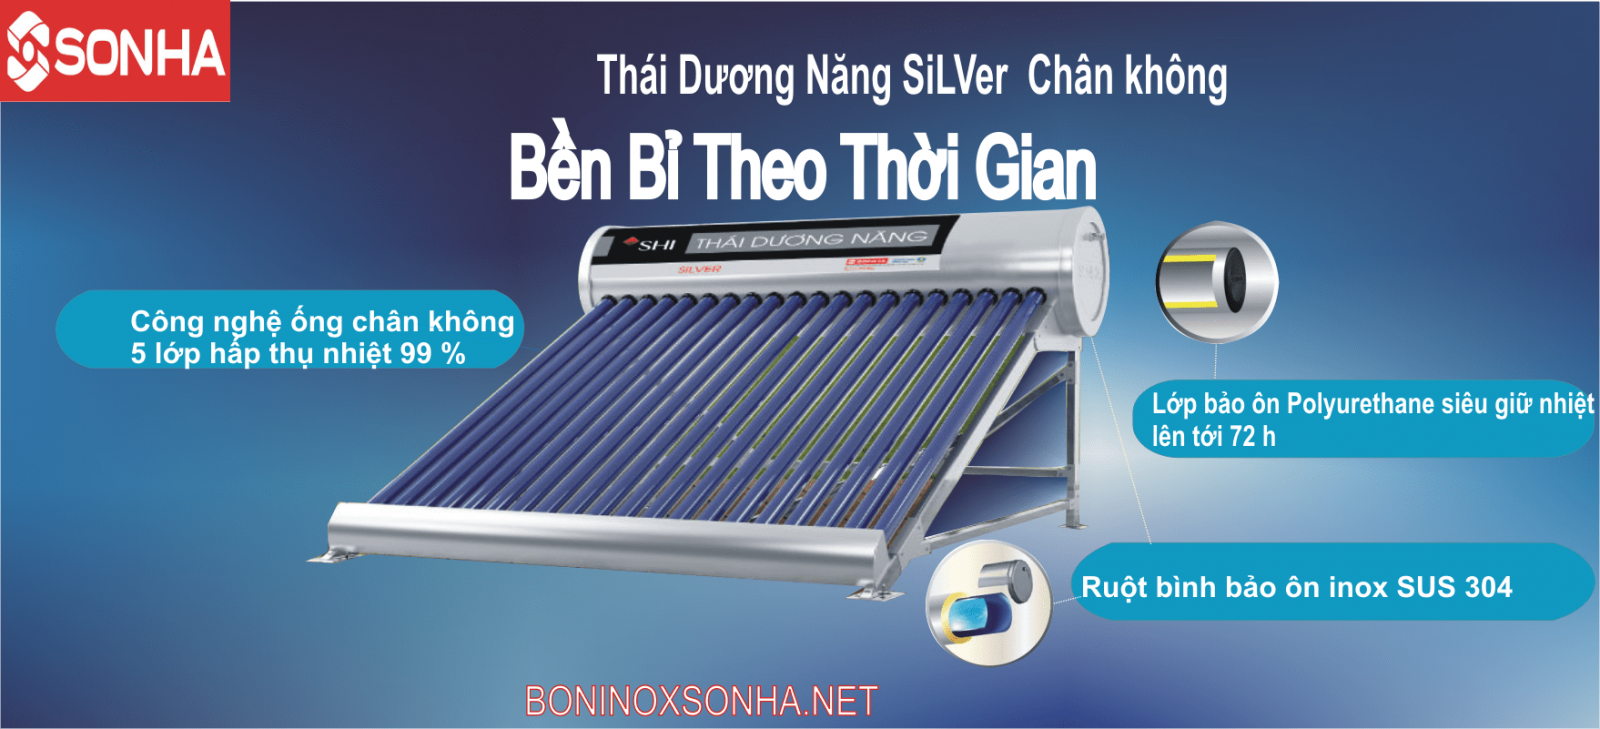 THÁI DƯƠNG NĂNG SILVER 58 - 140 Chân Không Sơn Hà